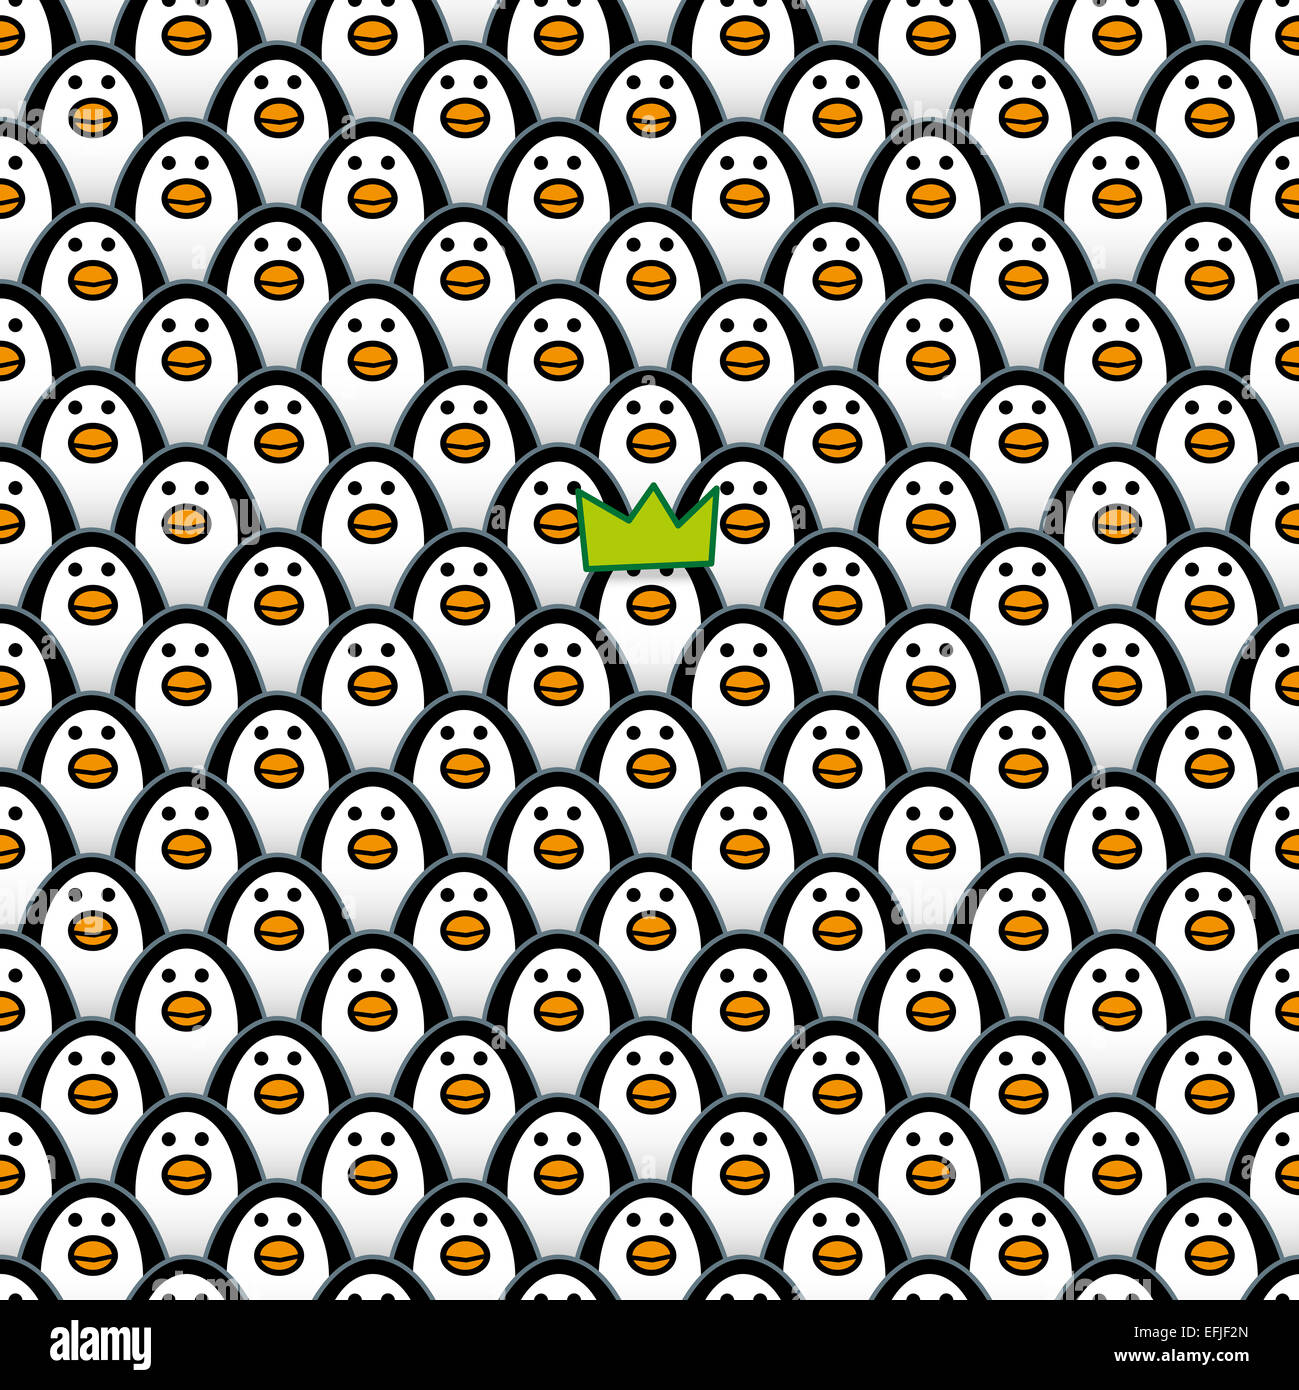 Un seul Penguin portant un chapeau vert entre les rangées de répéter de façon identique et l'avant fixant les Pingouins Banque D'Images